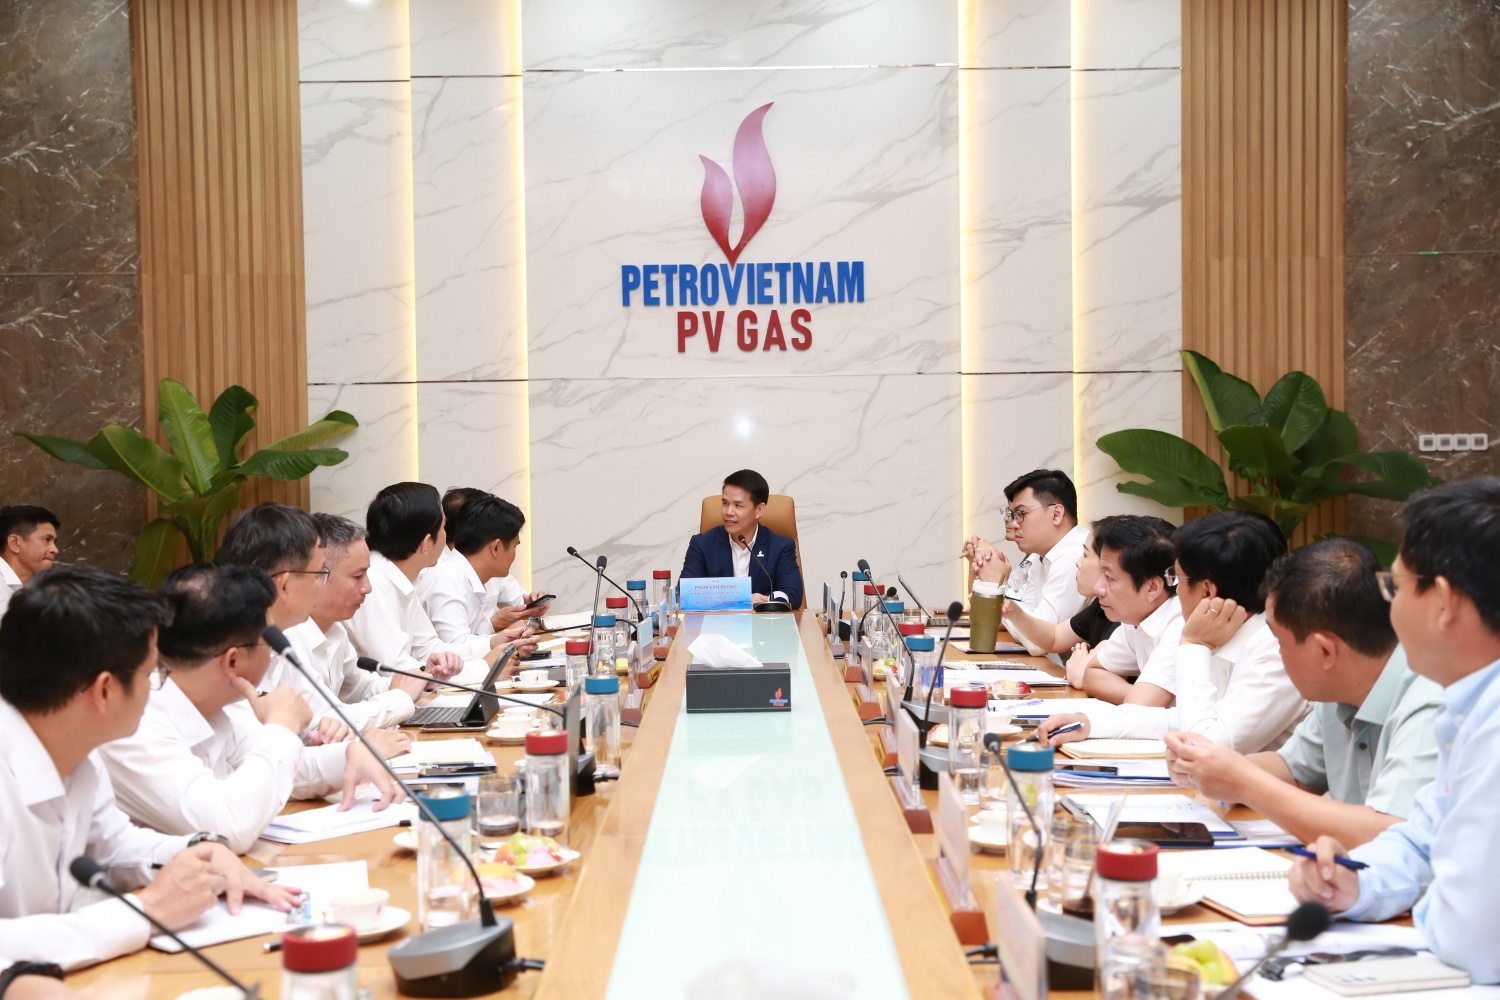 Ông Phạm Văn Phong - Tổng Giám đốc PV GAS chủ trì cuộc họp